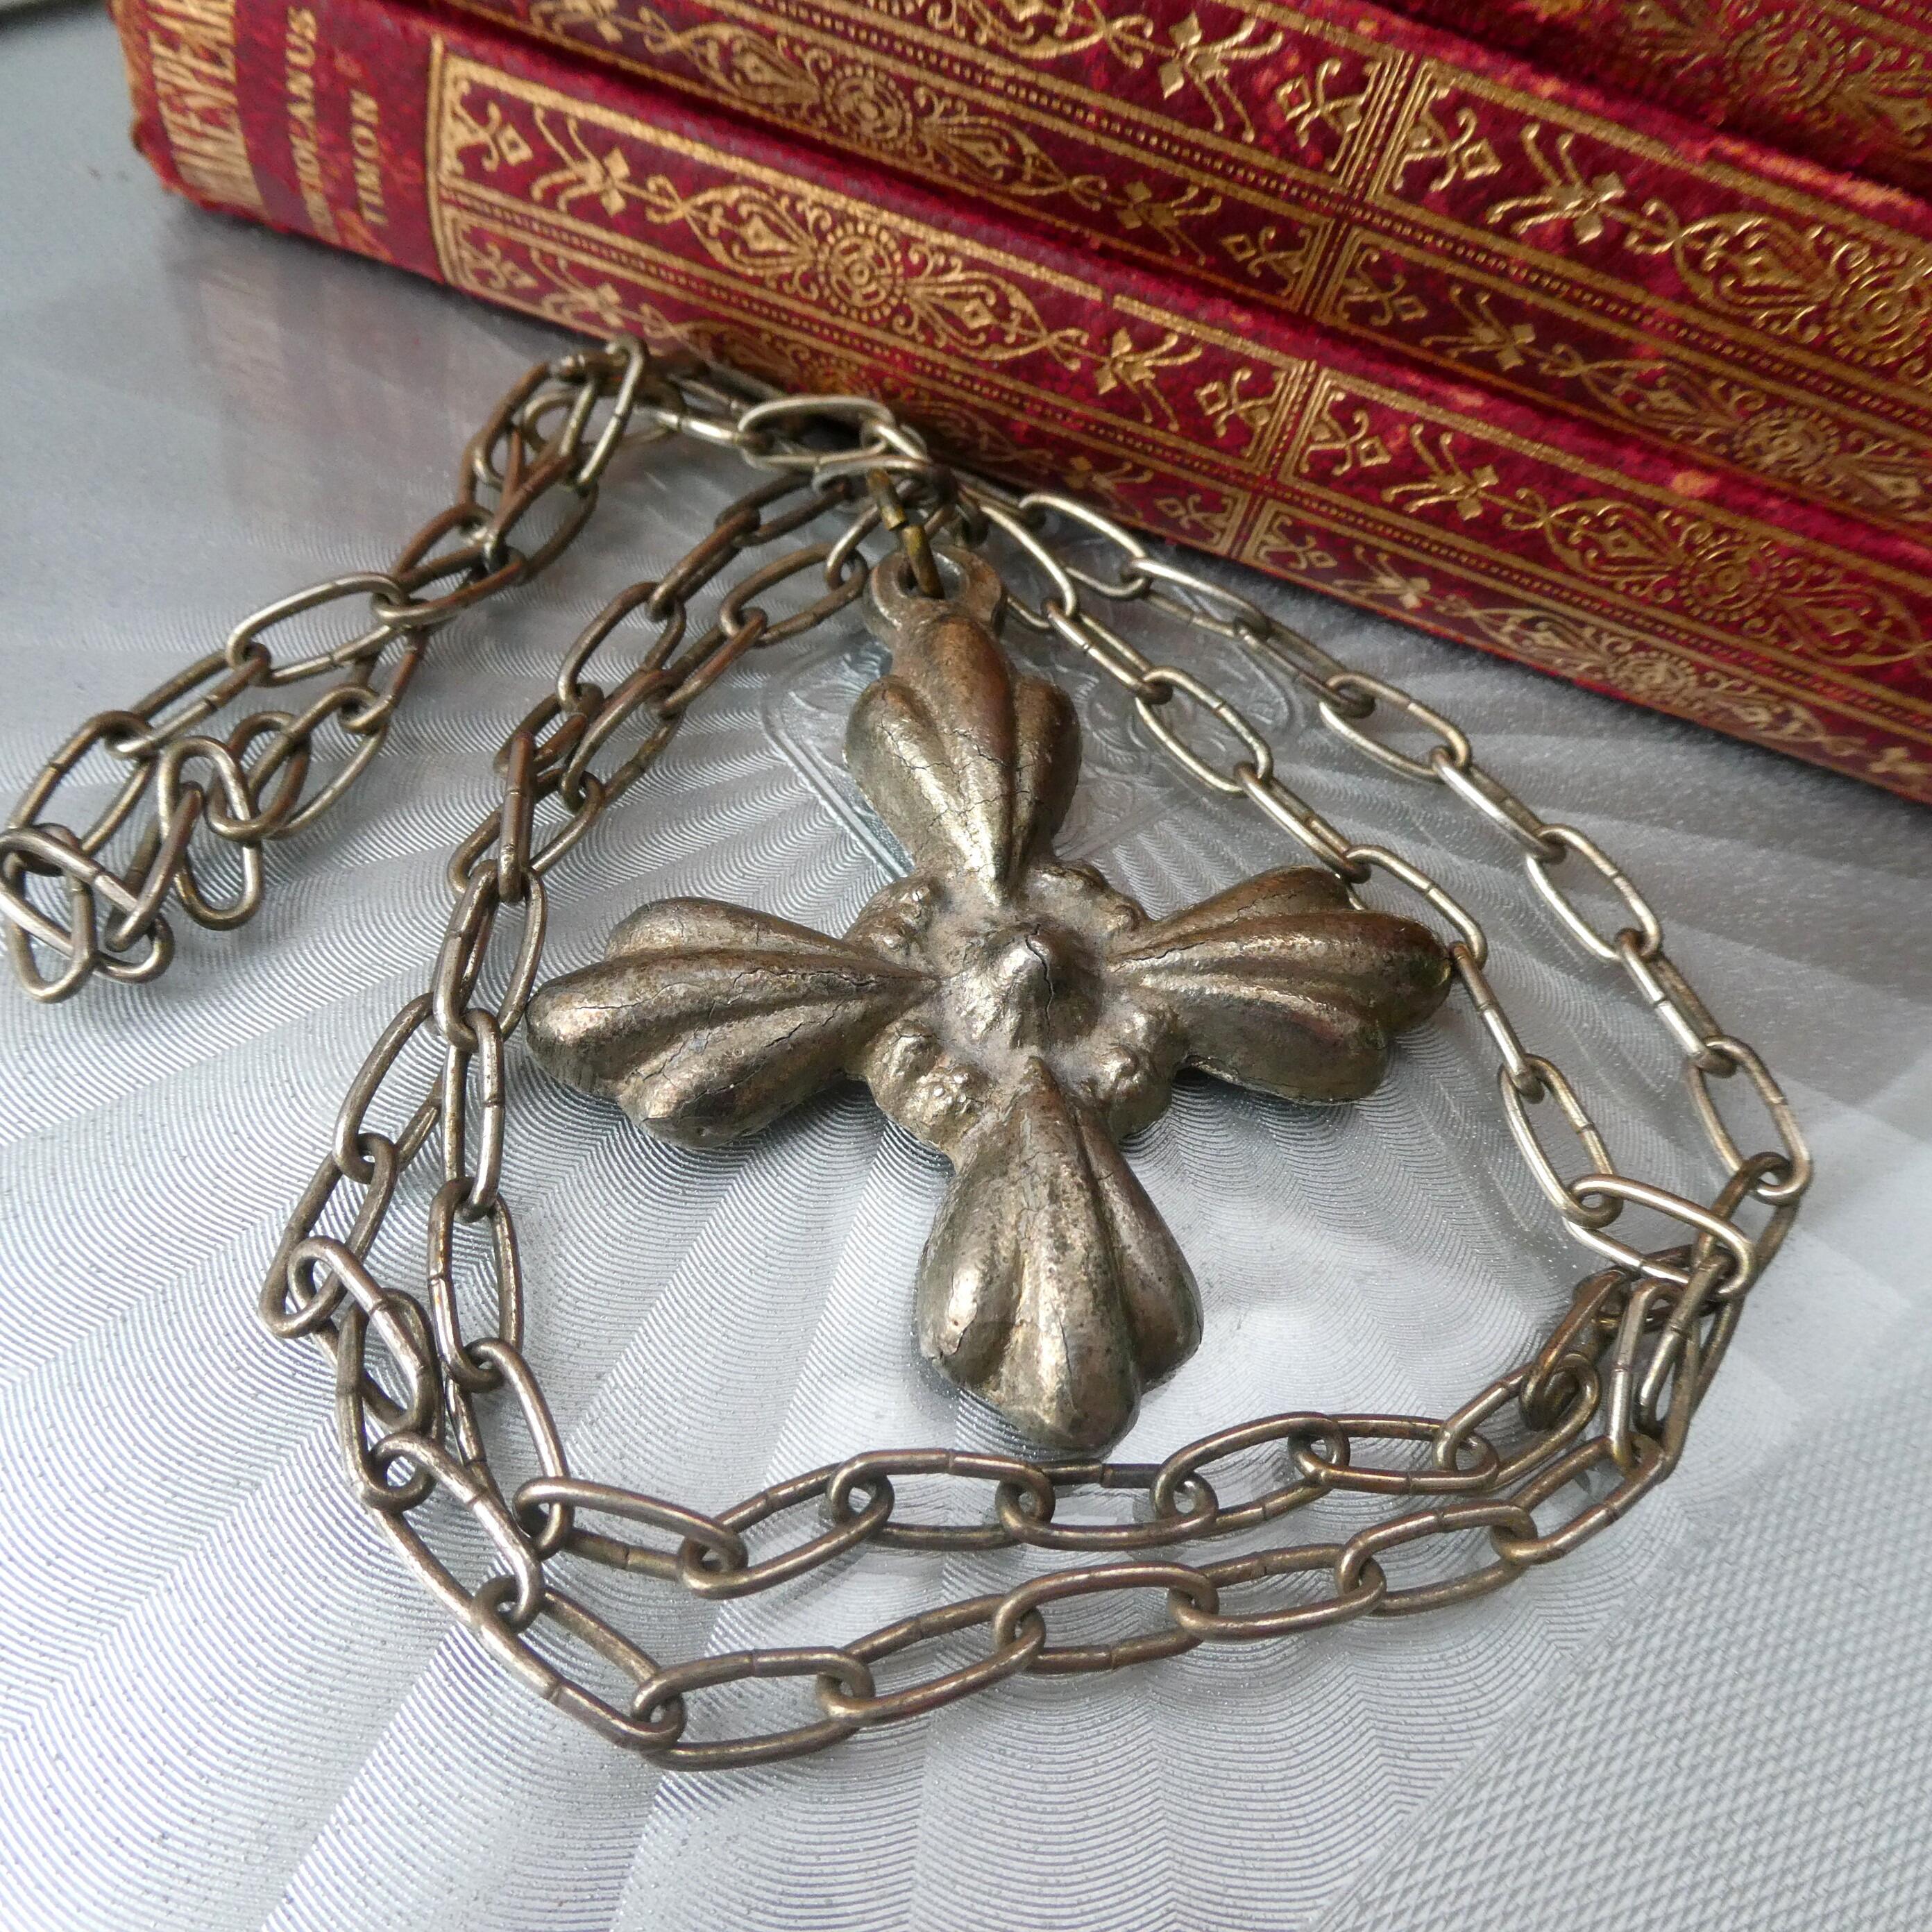 Buy Viking Catholic Cross Necklace | Shop Viking Catholic Cross Necklace